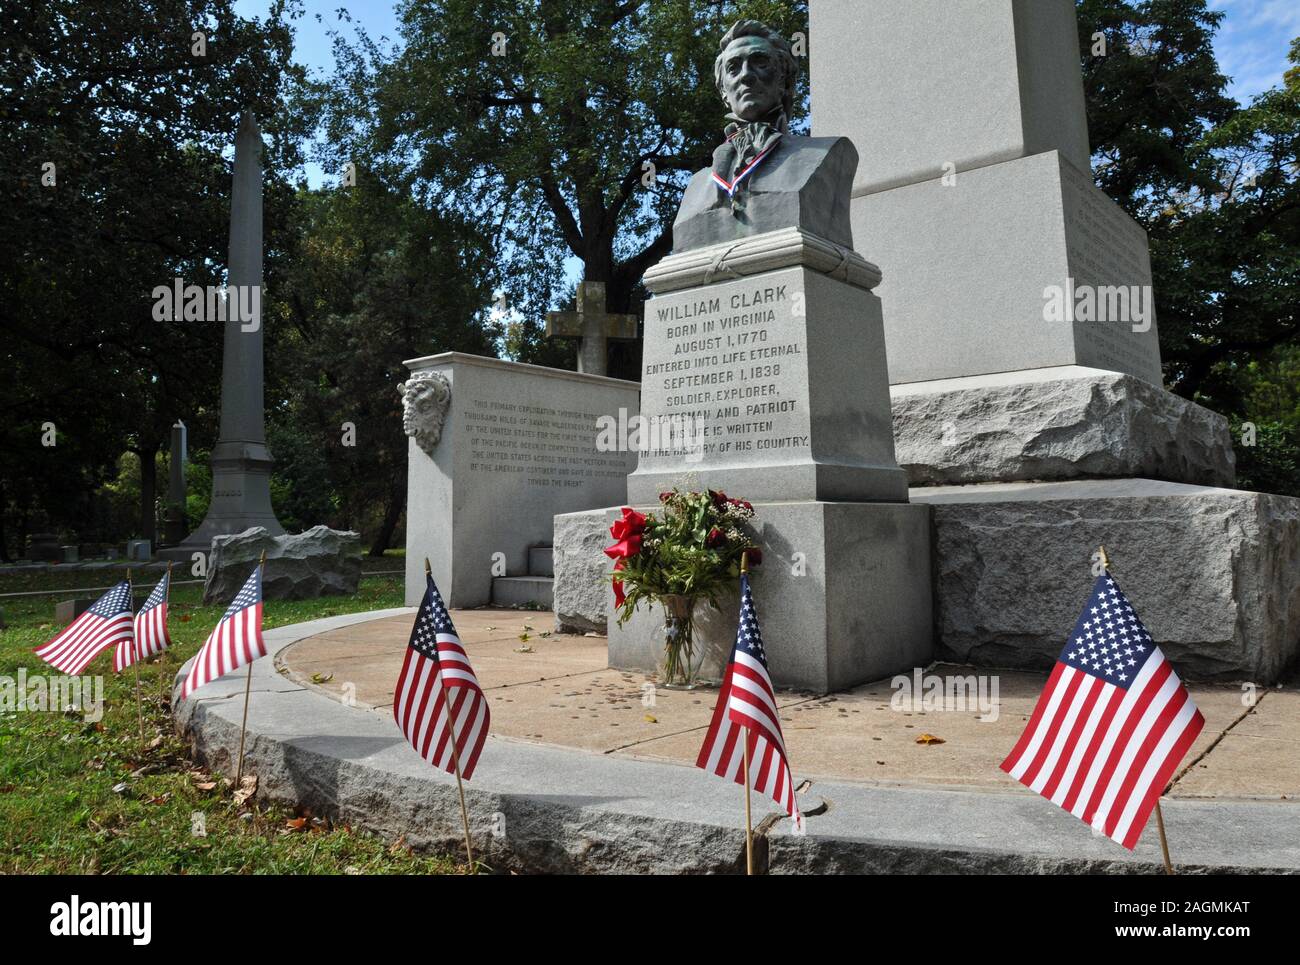 La tombe de l'explorateur William Clark dans le cimetière Bellefontaine de Saint Louis, MO. Clark a aidé à diriger l'expédition Lewis et Clark à l'océan Pacifique. Banque D'Images